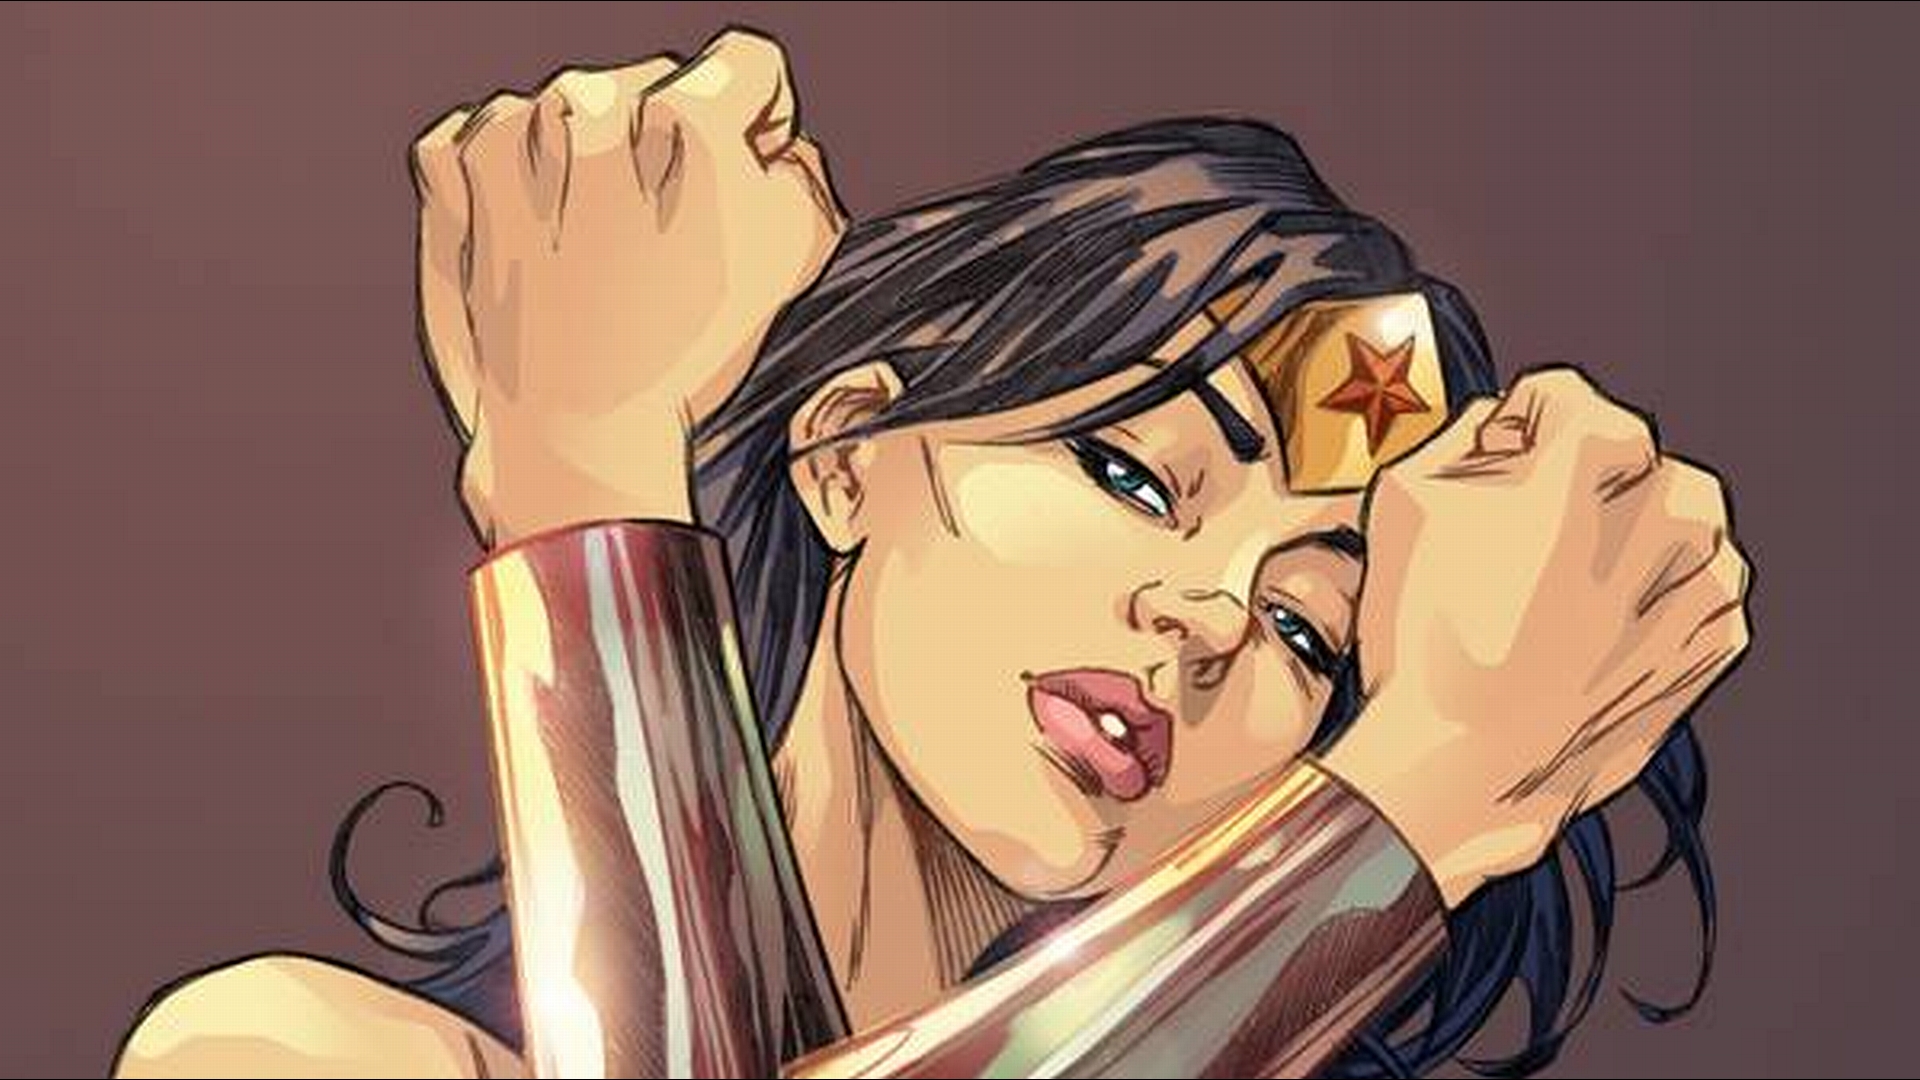 download Wonder Woman free